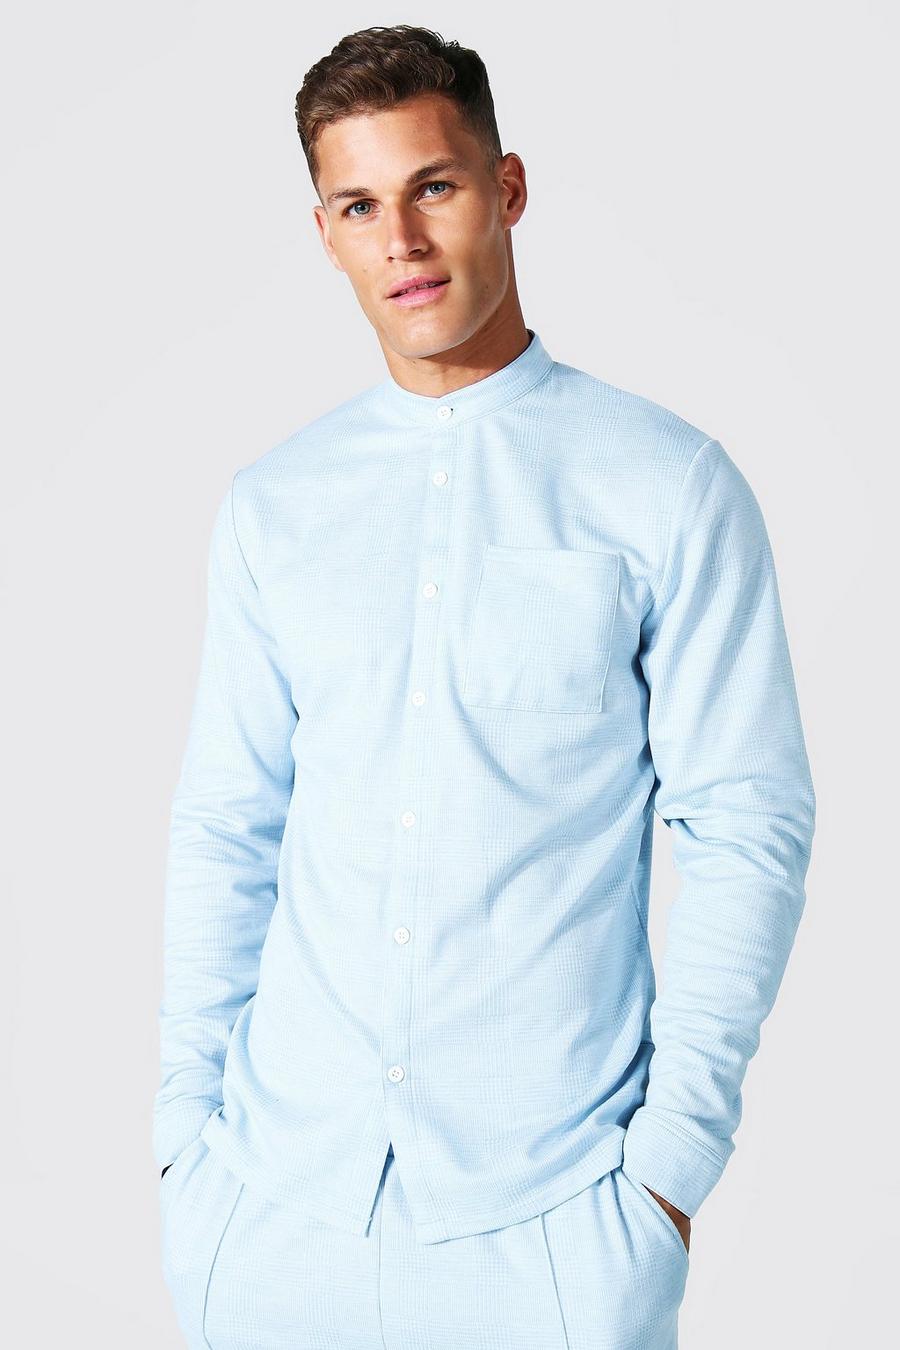 כחול בהיר חולצת ג'קארד בגזרה צרה עם שרוולים ארוכים והדפס משבצות image number 1